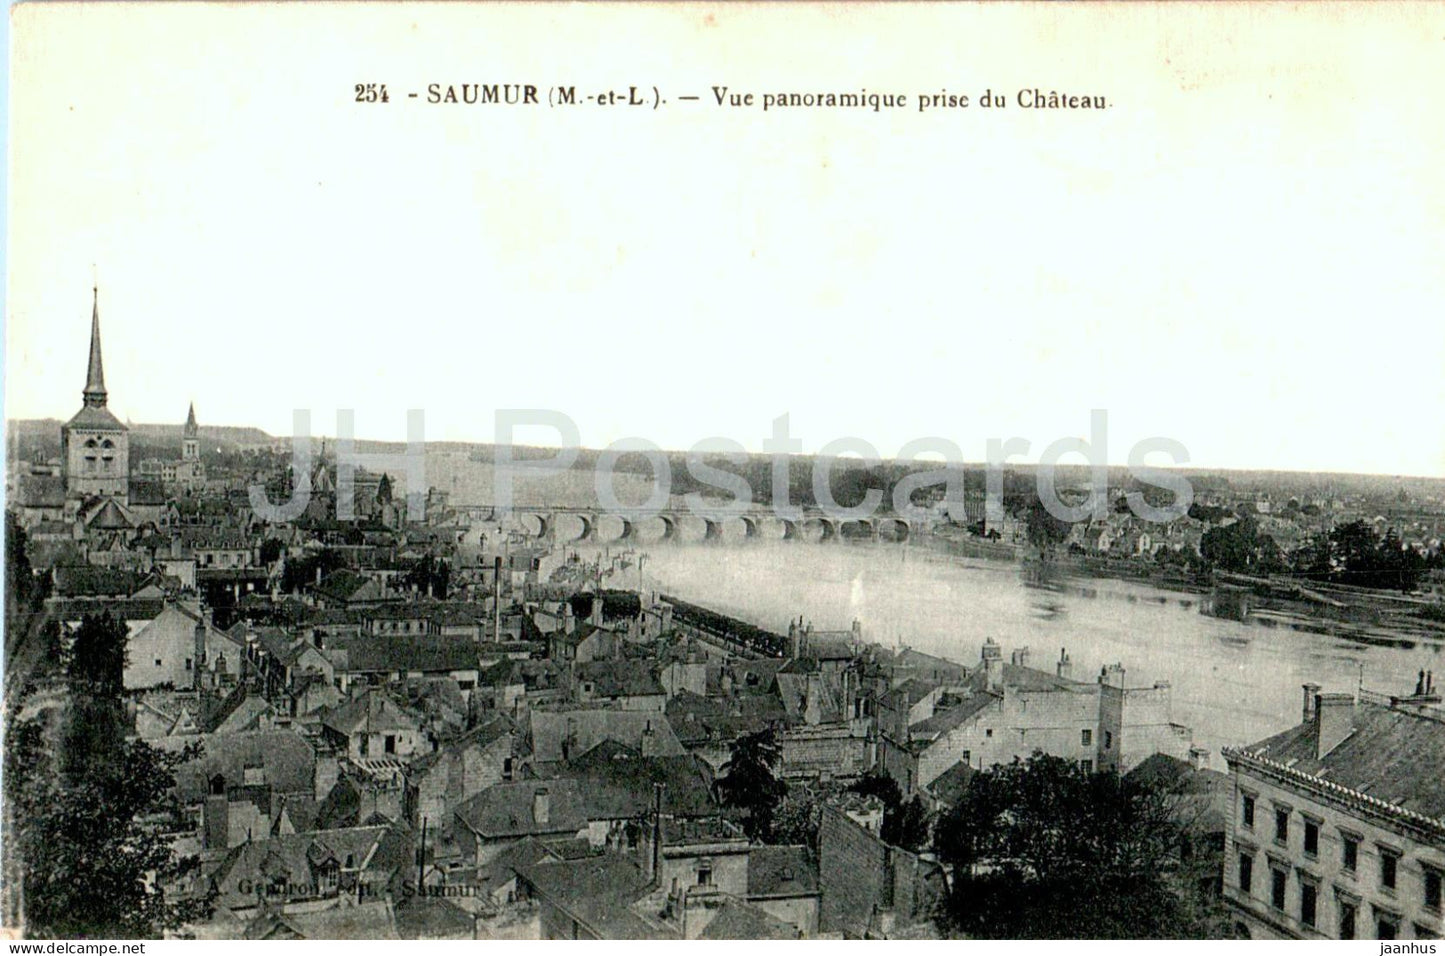 Saumur - Vue panoramique prise du Chateau - 254 - old postcard - France - unused - JH Postcards